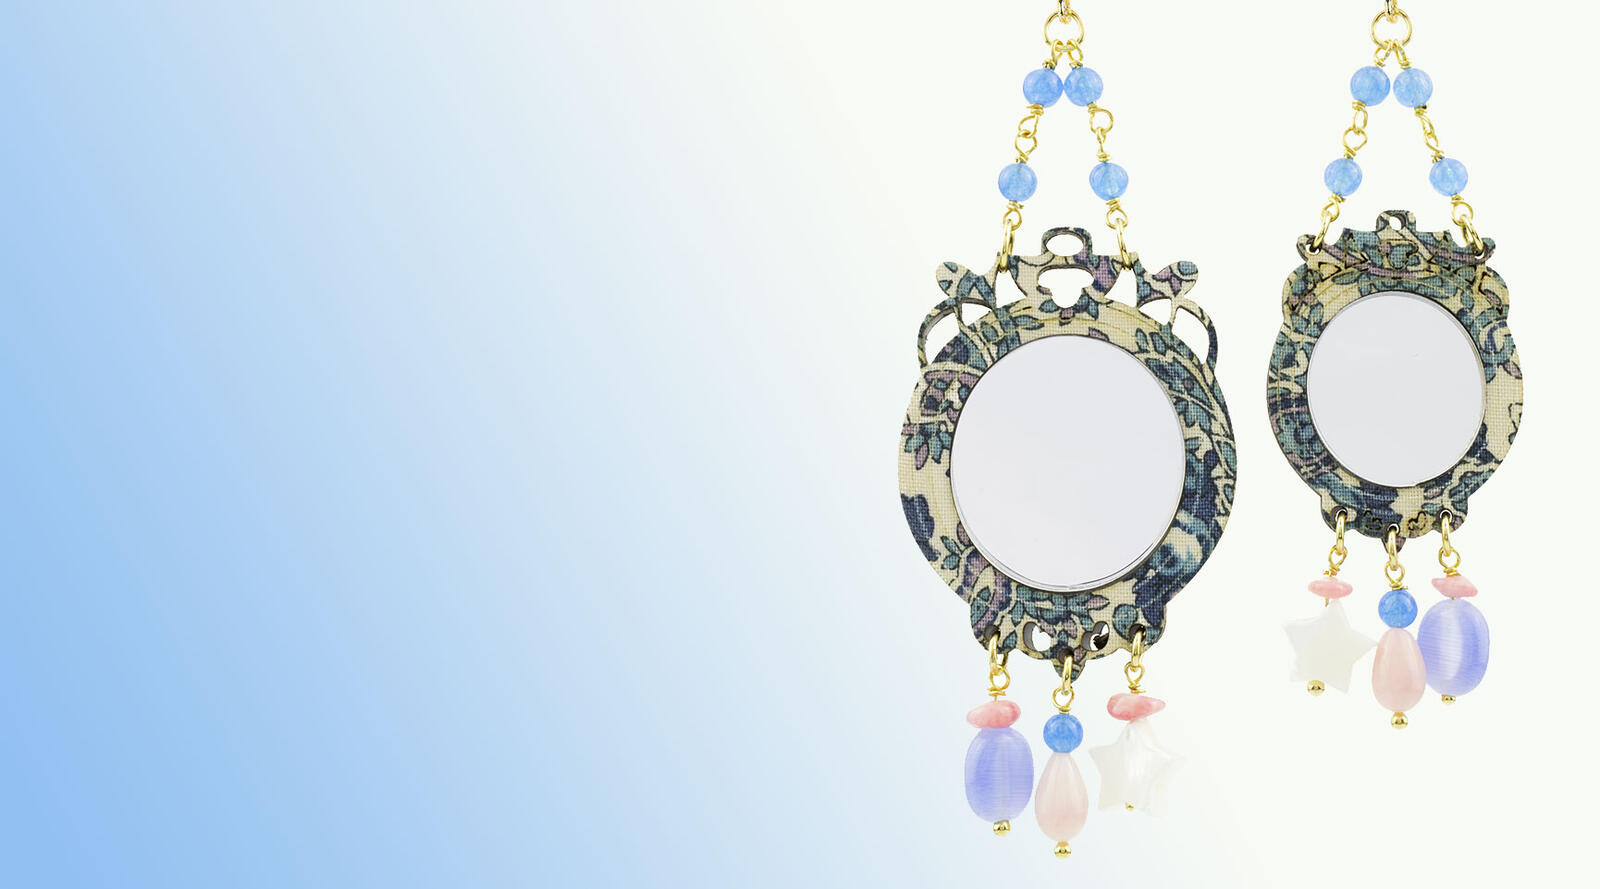 Un gioiello capace di riflettere le immagini, uno specchio incastonato sinonimo di sincerità e purezza. Lebole Maison